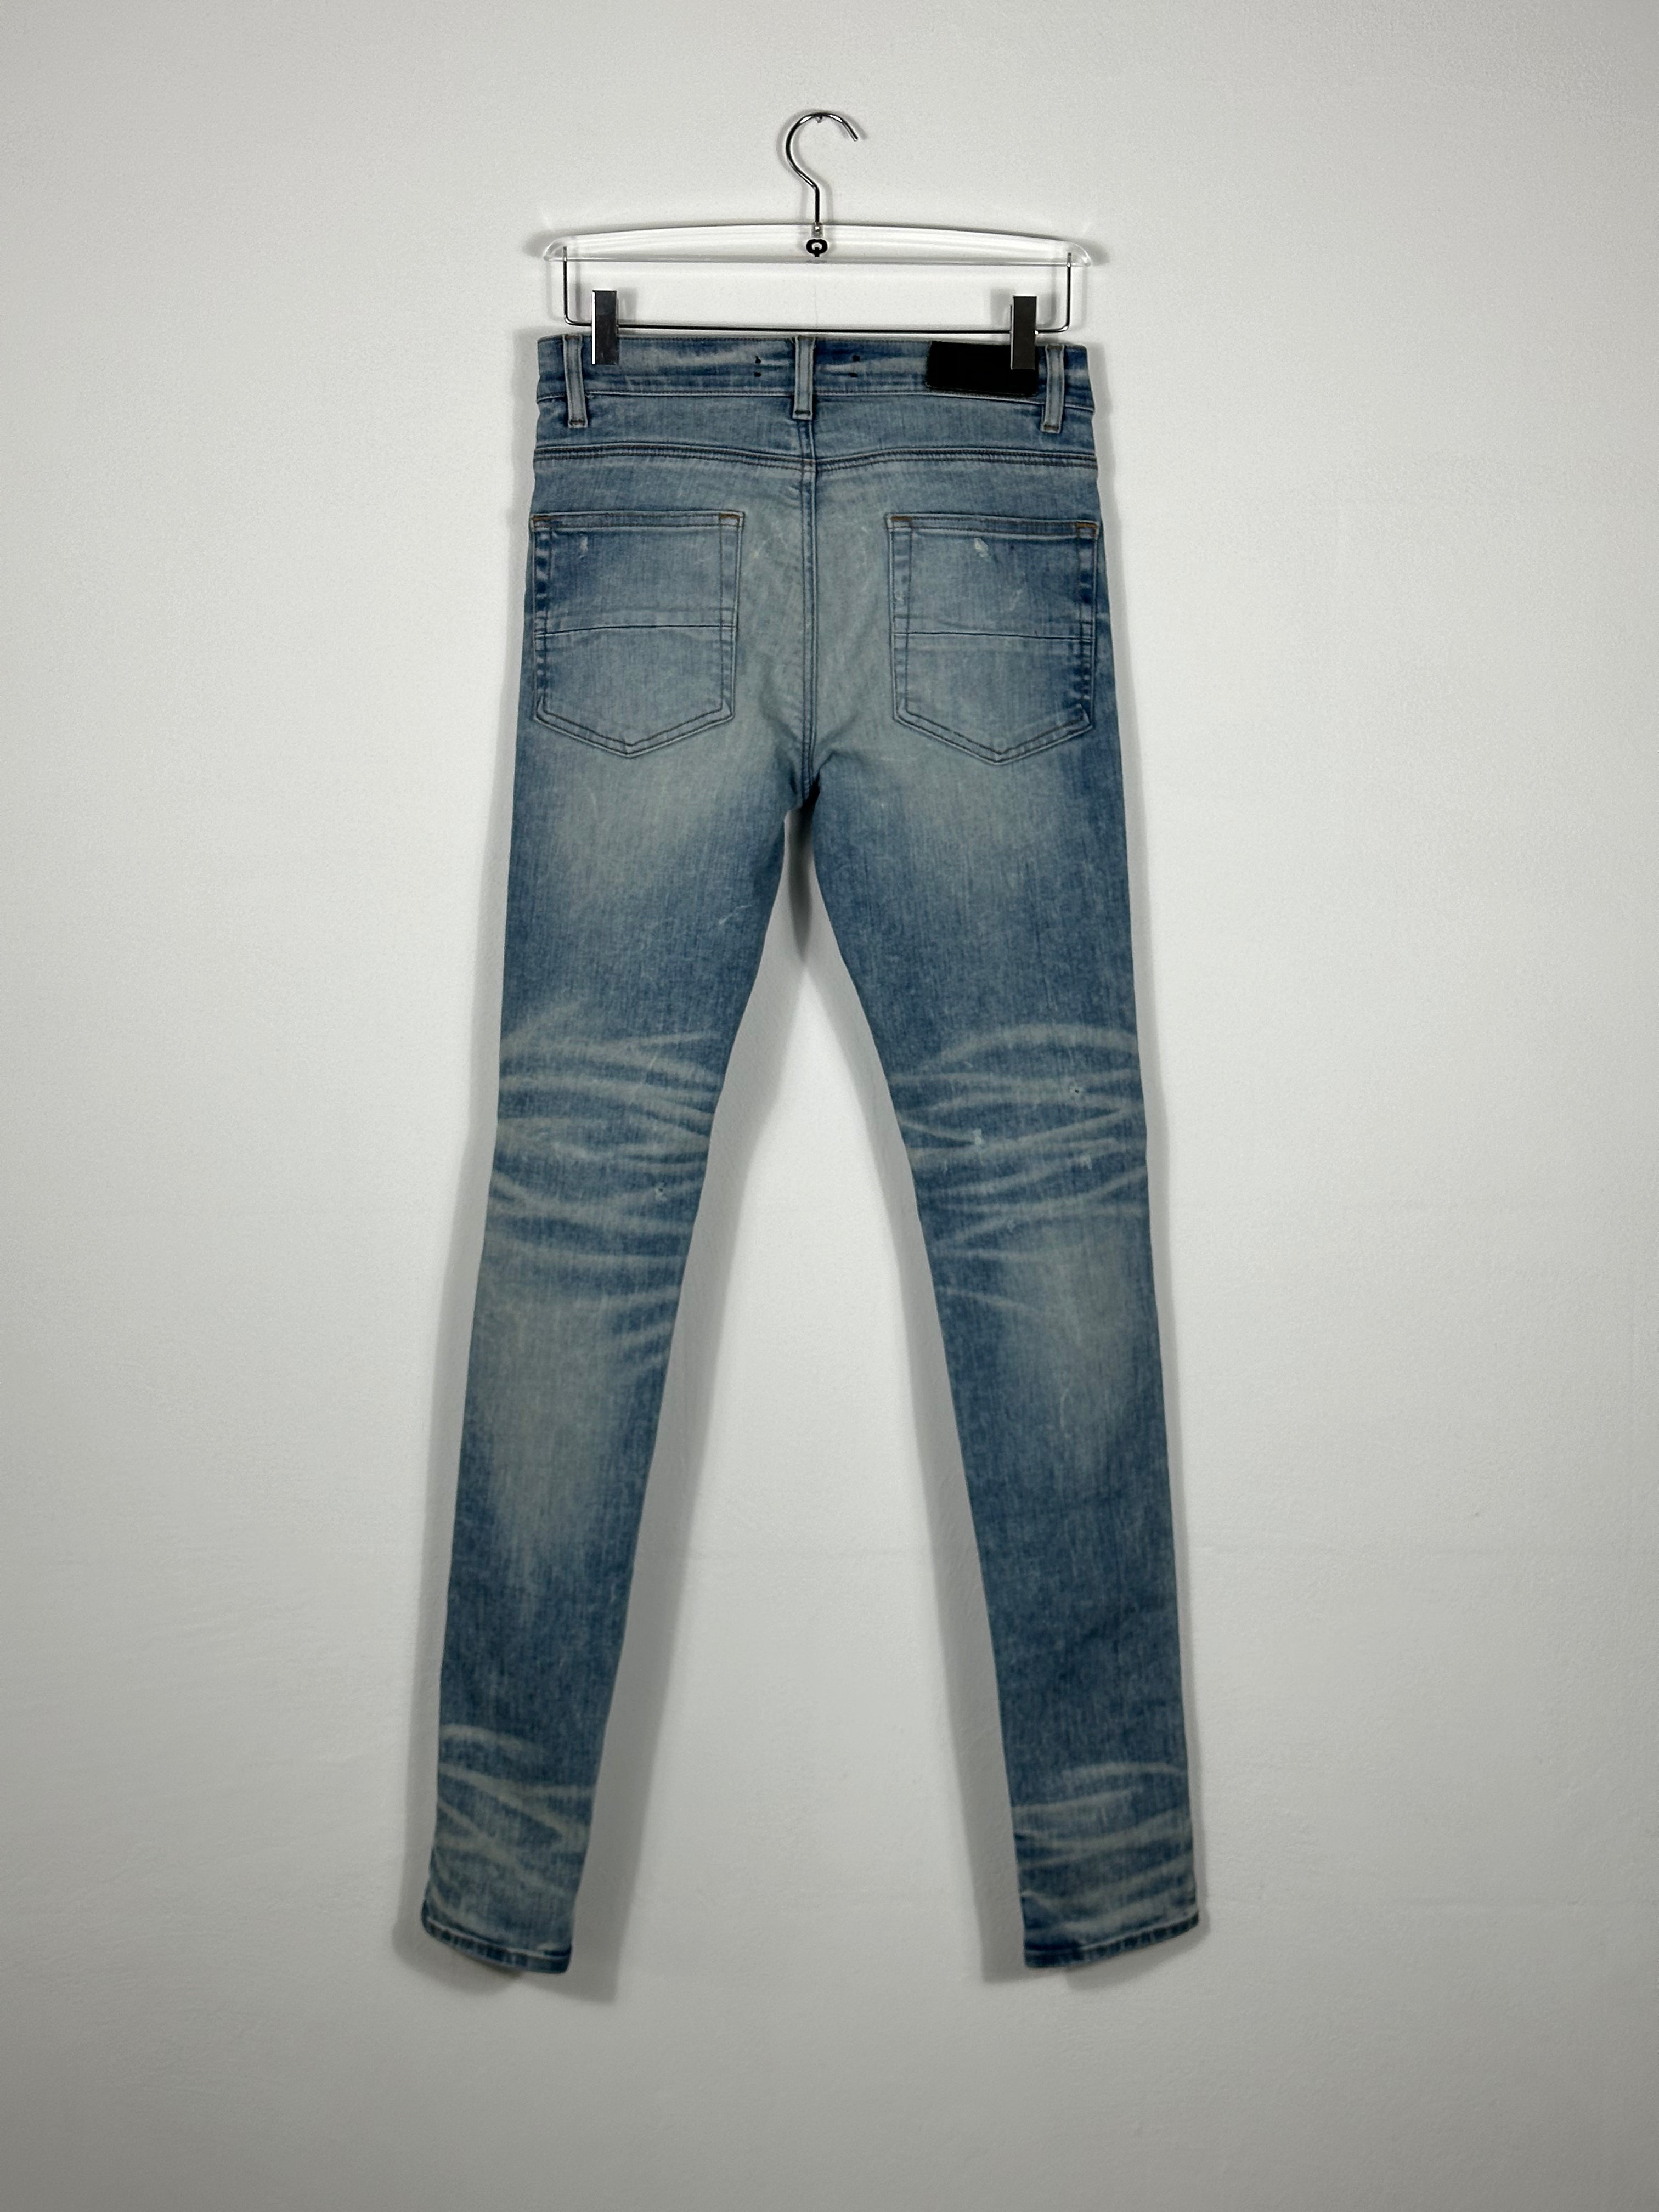 Ripped Skinny Jeans by Sfera Ebbasta